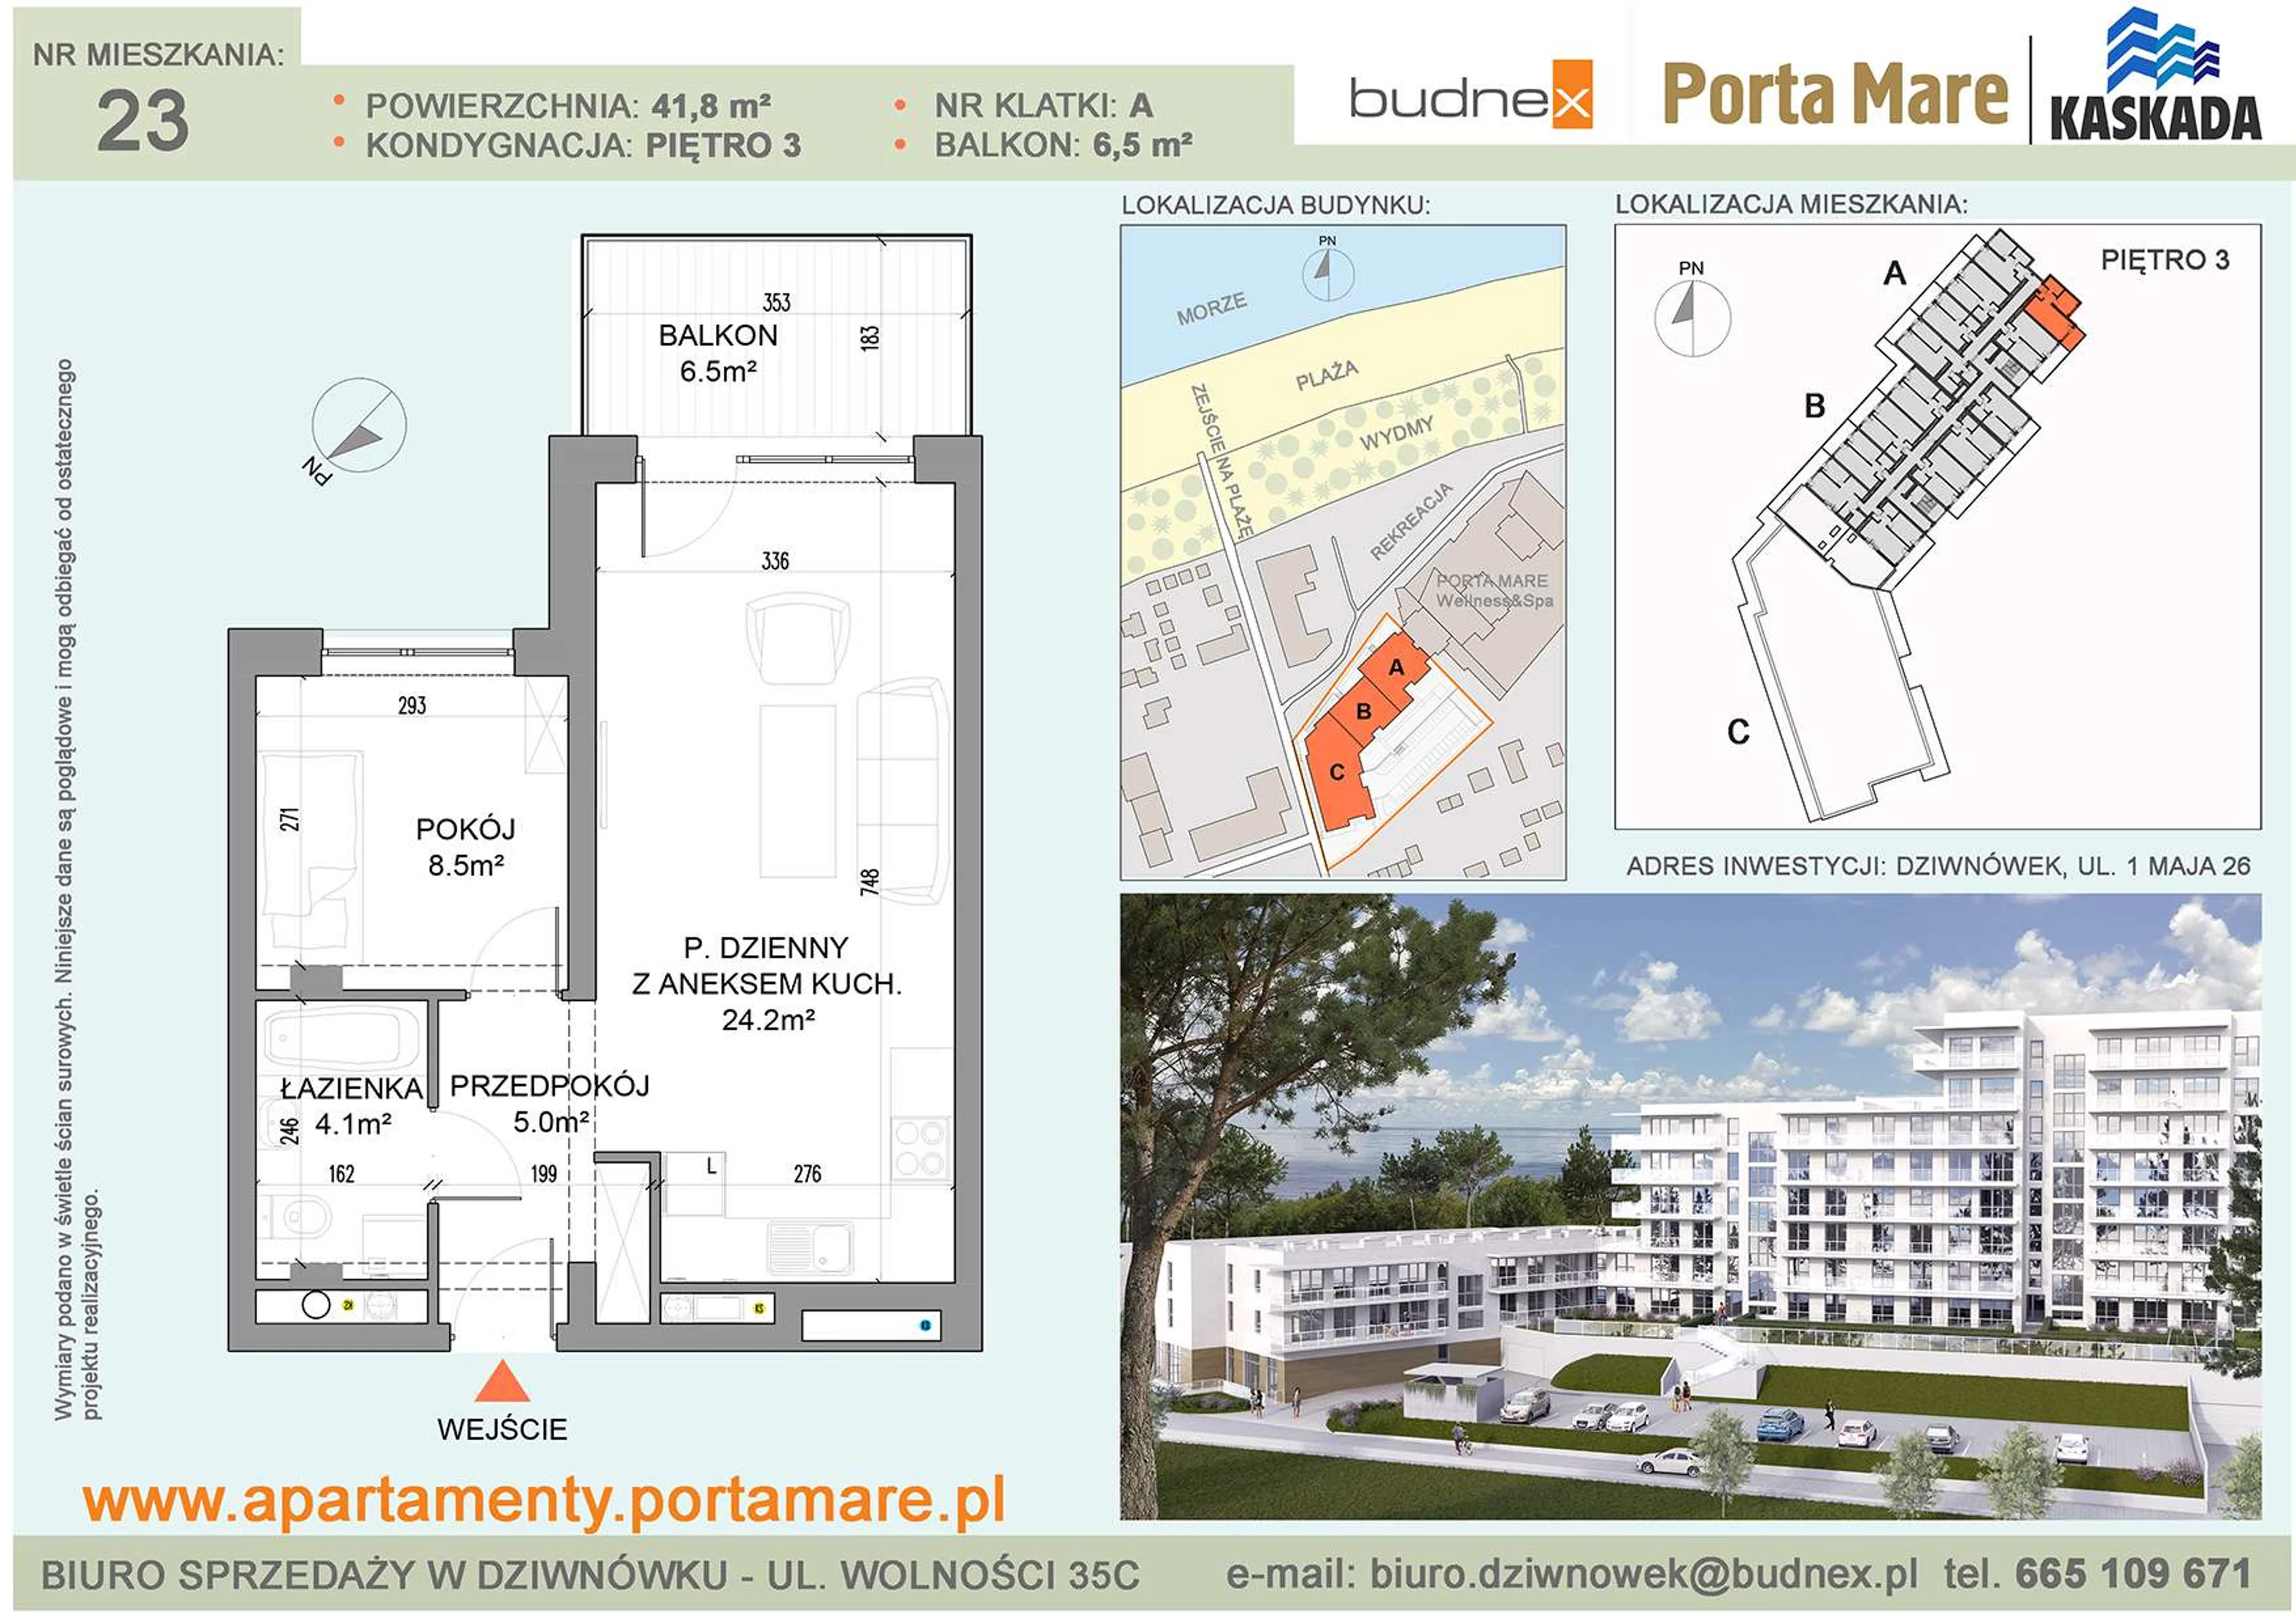 Apartament 41,80 m², piętro 3, oferta nr A/M23, Porta Mare Kaskada, Dziwnówek, ul. 1 Maja 26